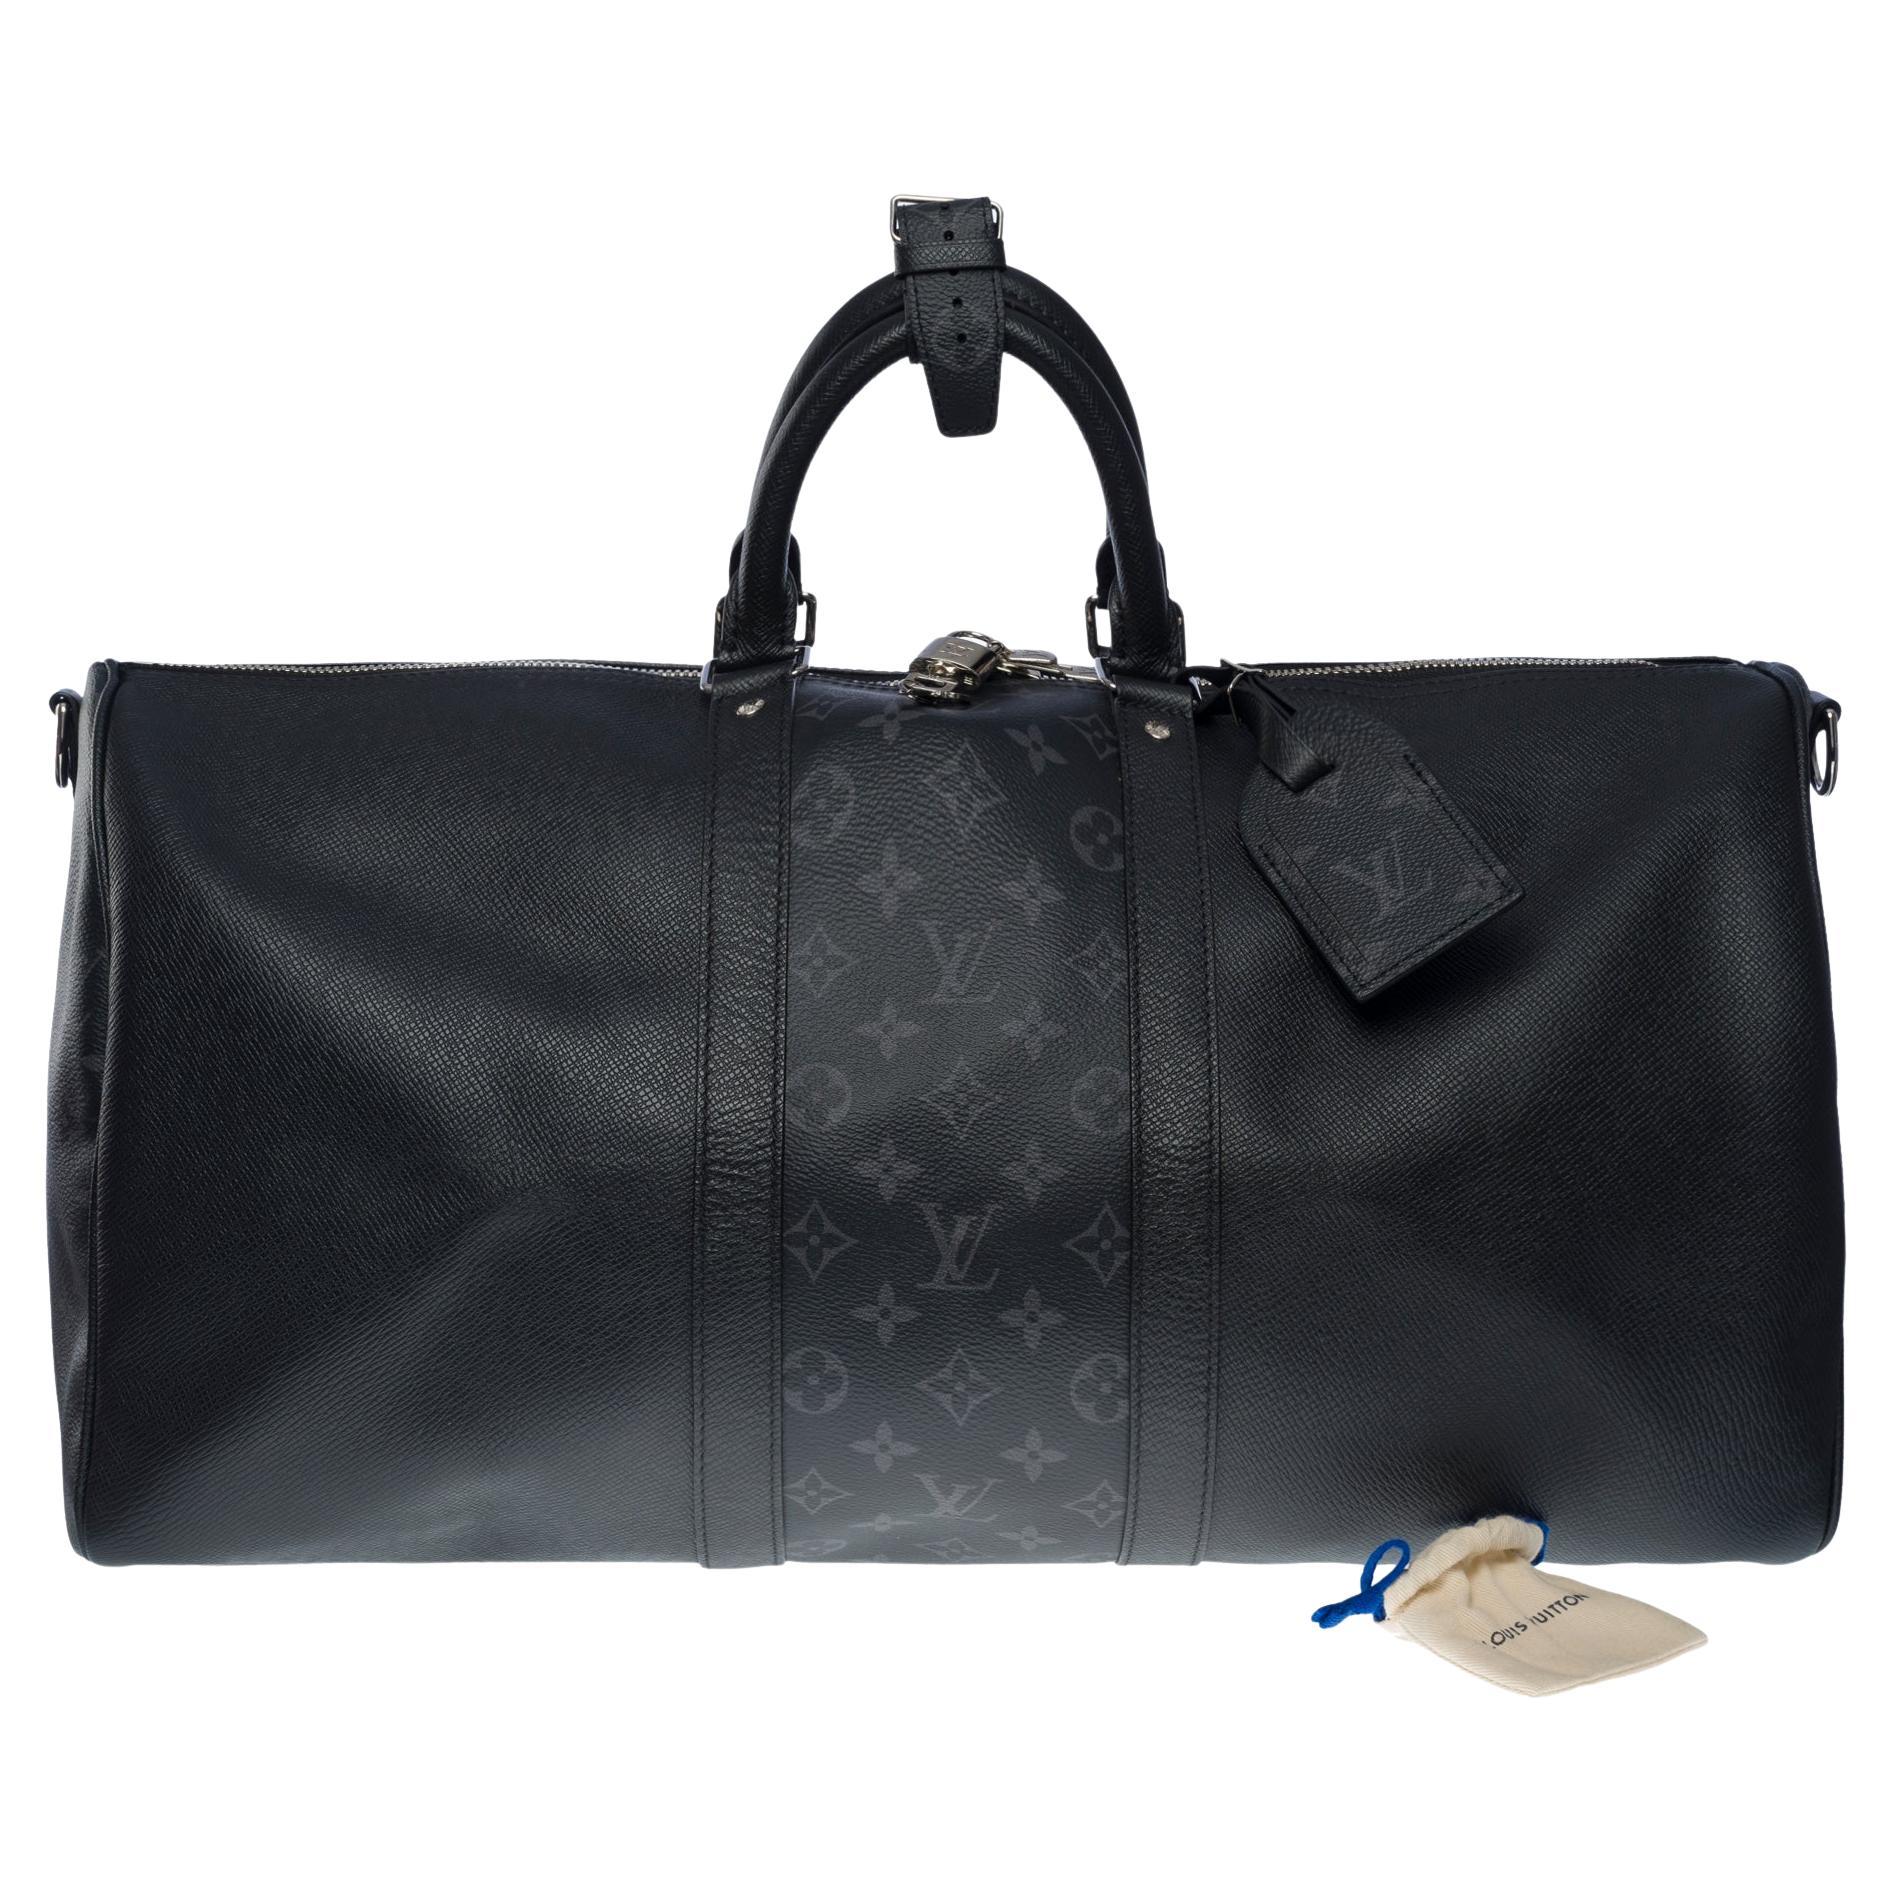 Sac de voyage Louis Vuitton Keepall 50 Taigarama en toile noire et cuir, SHW en vente